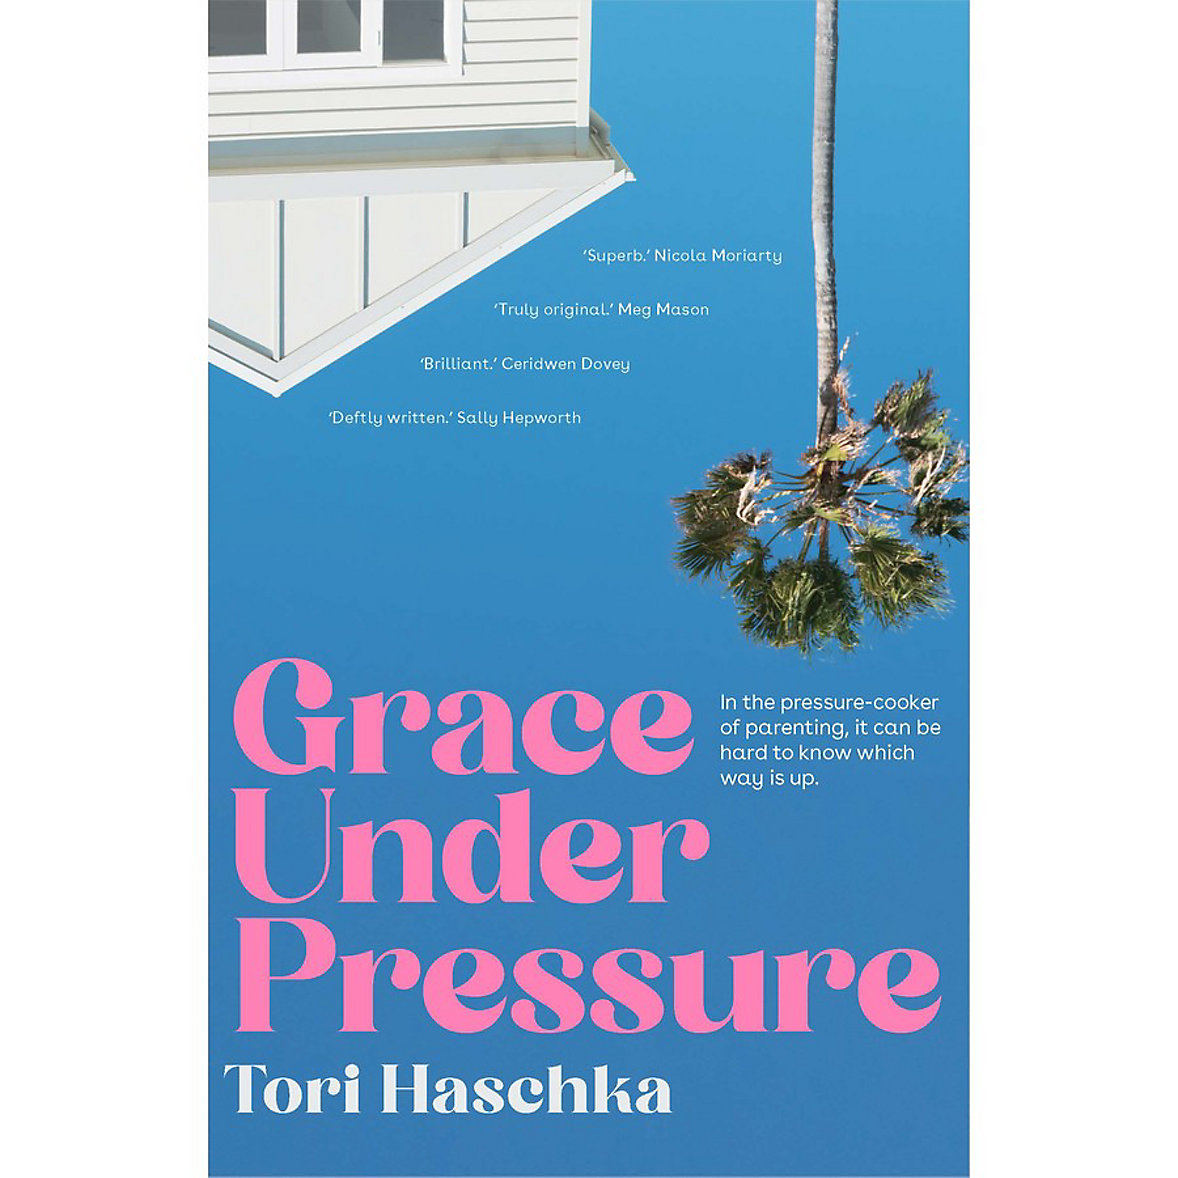 Grace Under Pressure by Tori Haschka